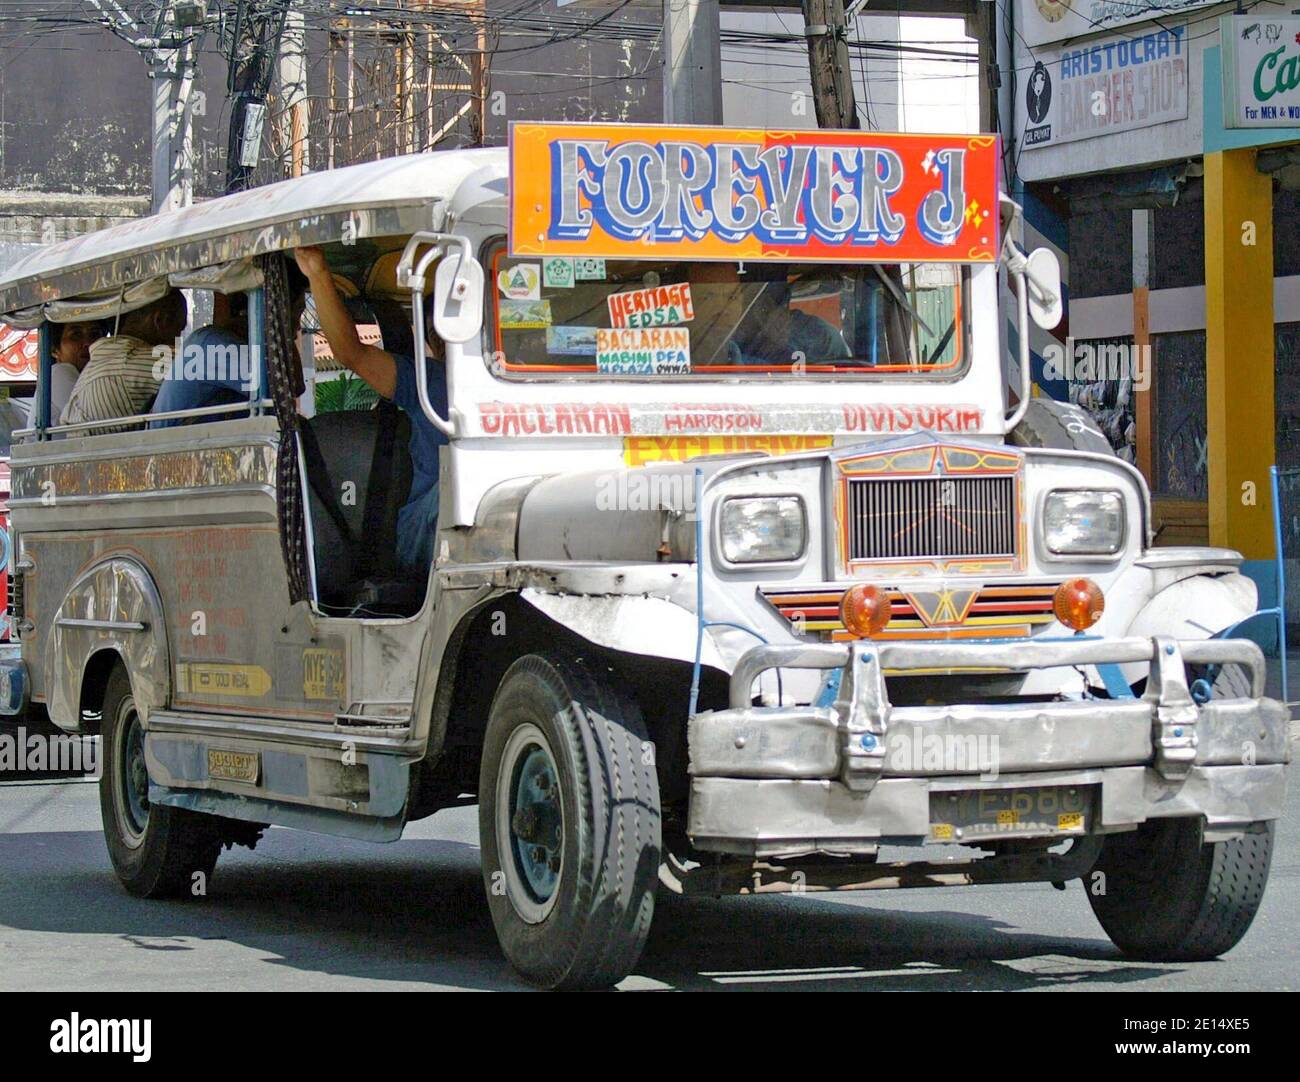 Die kunstvoll geschmückte Kulturikone der Philippinen, der Jeepney, ist der wichtigste öffentliche Verkehrstransfer, der Teil einer Auslaufstrategie und Modernisierungsstrategie war. Im Jahr 2016 wurde ihnen eine Altersgrenze von 15 Jahren gesetzt, wobei ältere Jeepneys auslaufen. Stockfoto